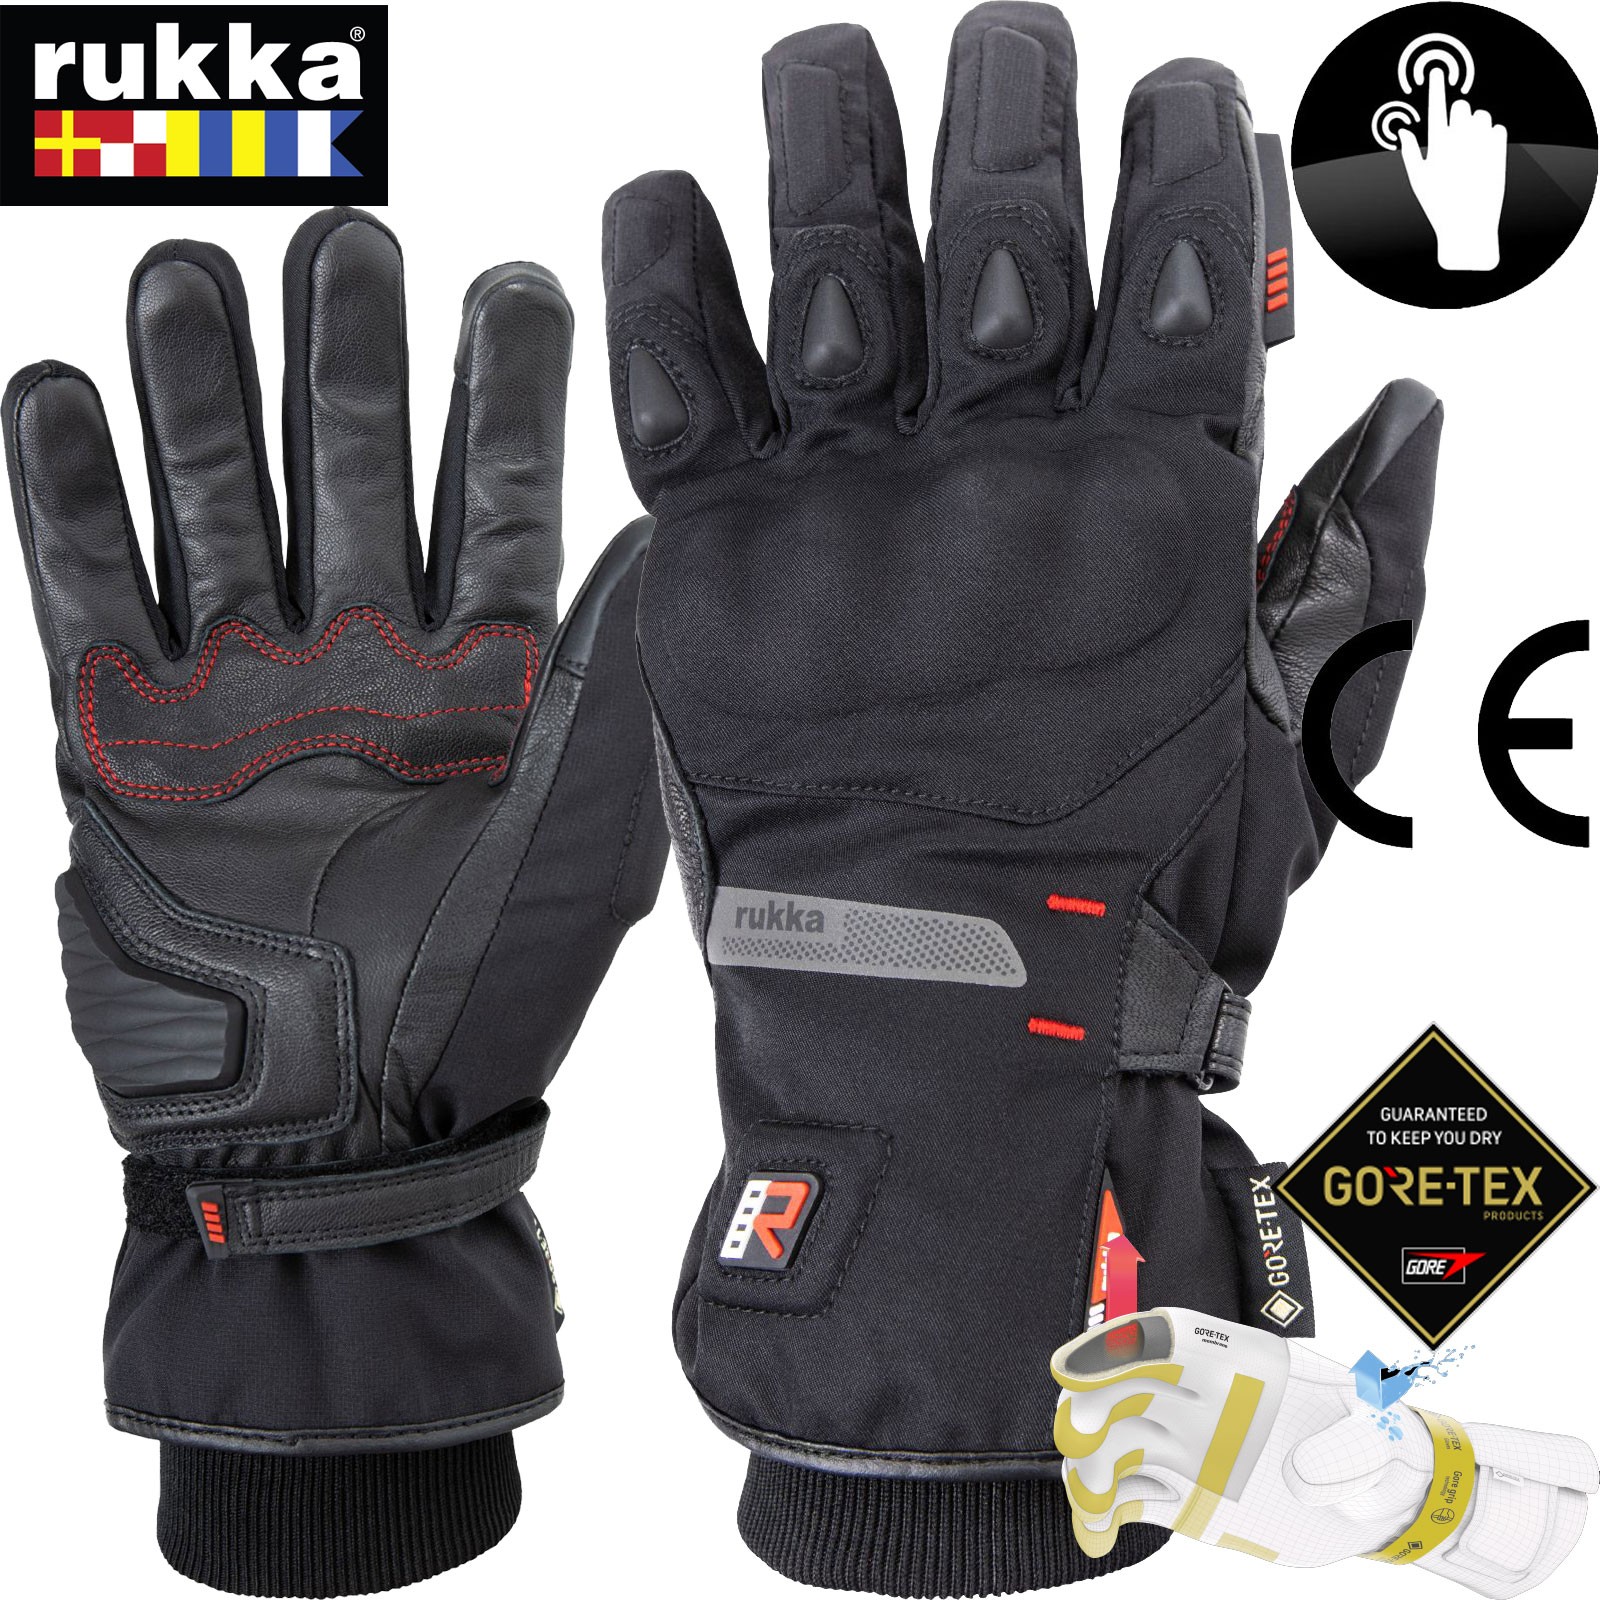 Rukka Ceres Gore-Tex Grip Motorrad Handschuhe Gr 13 = 3XL Schwarz GTX X-trafit 